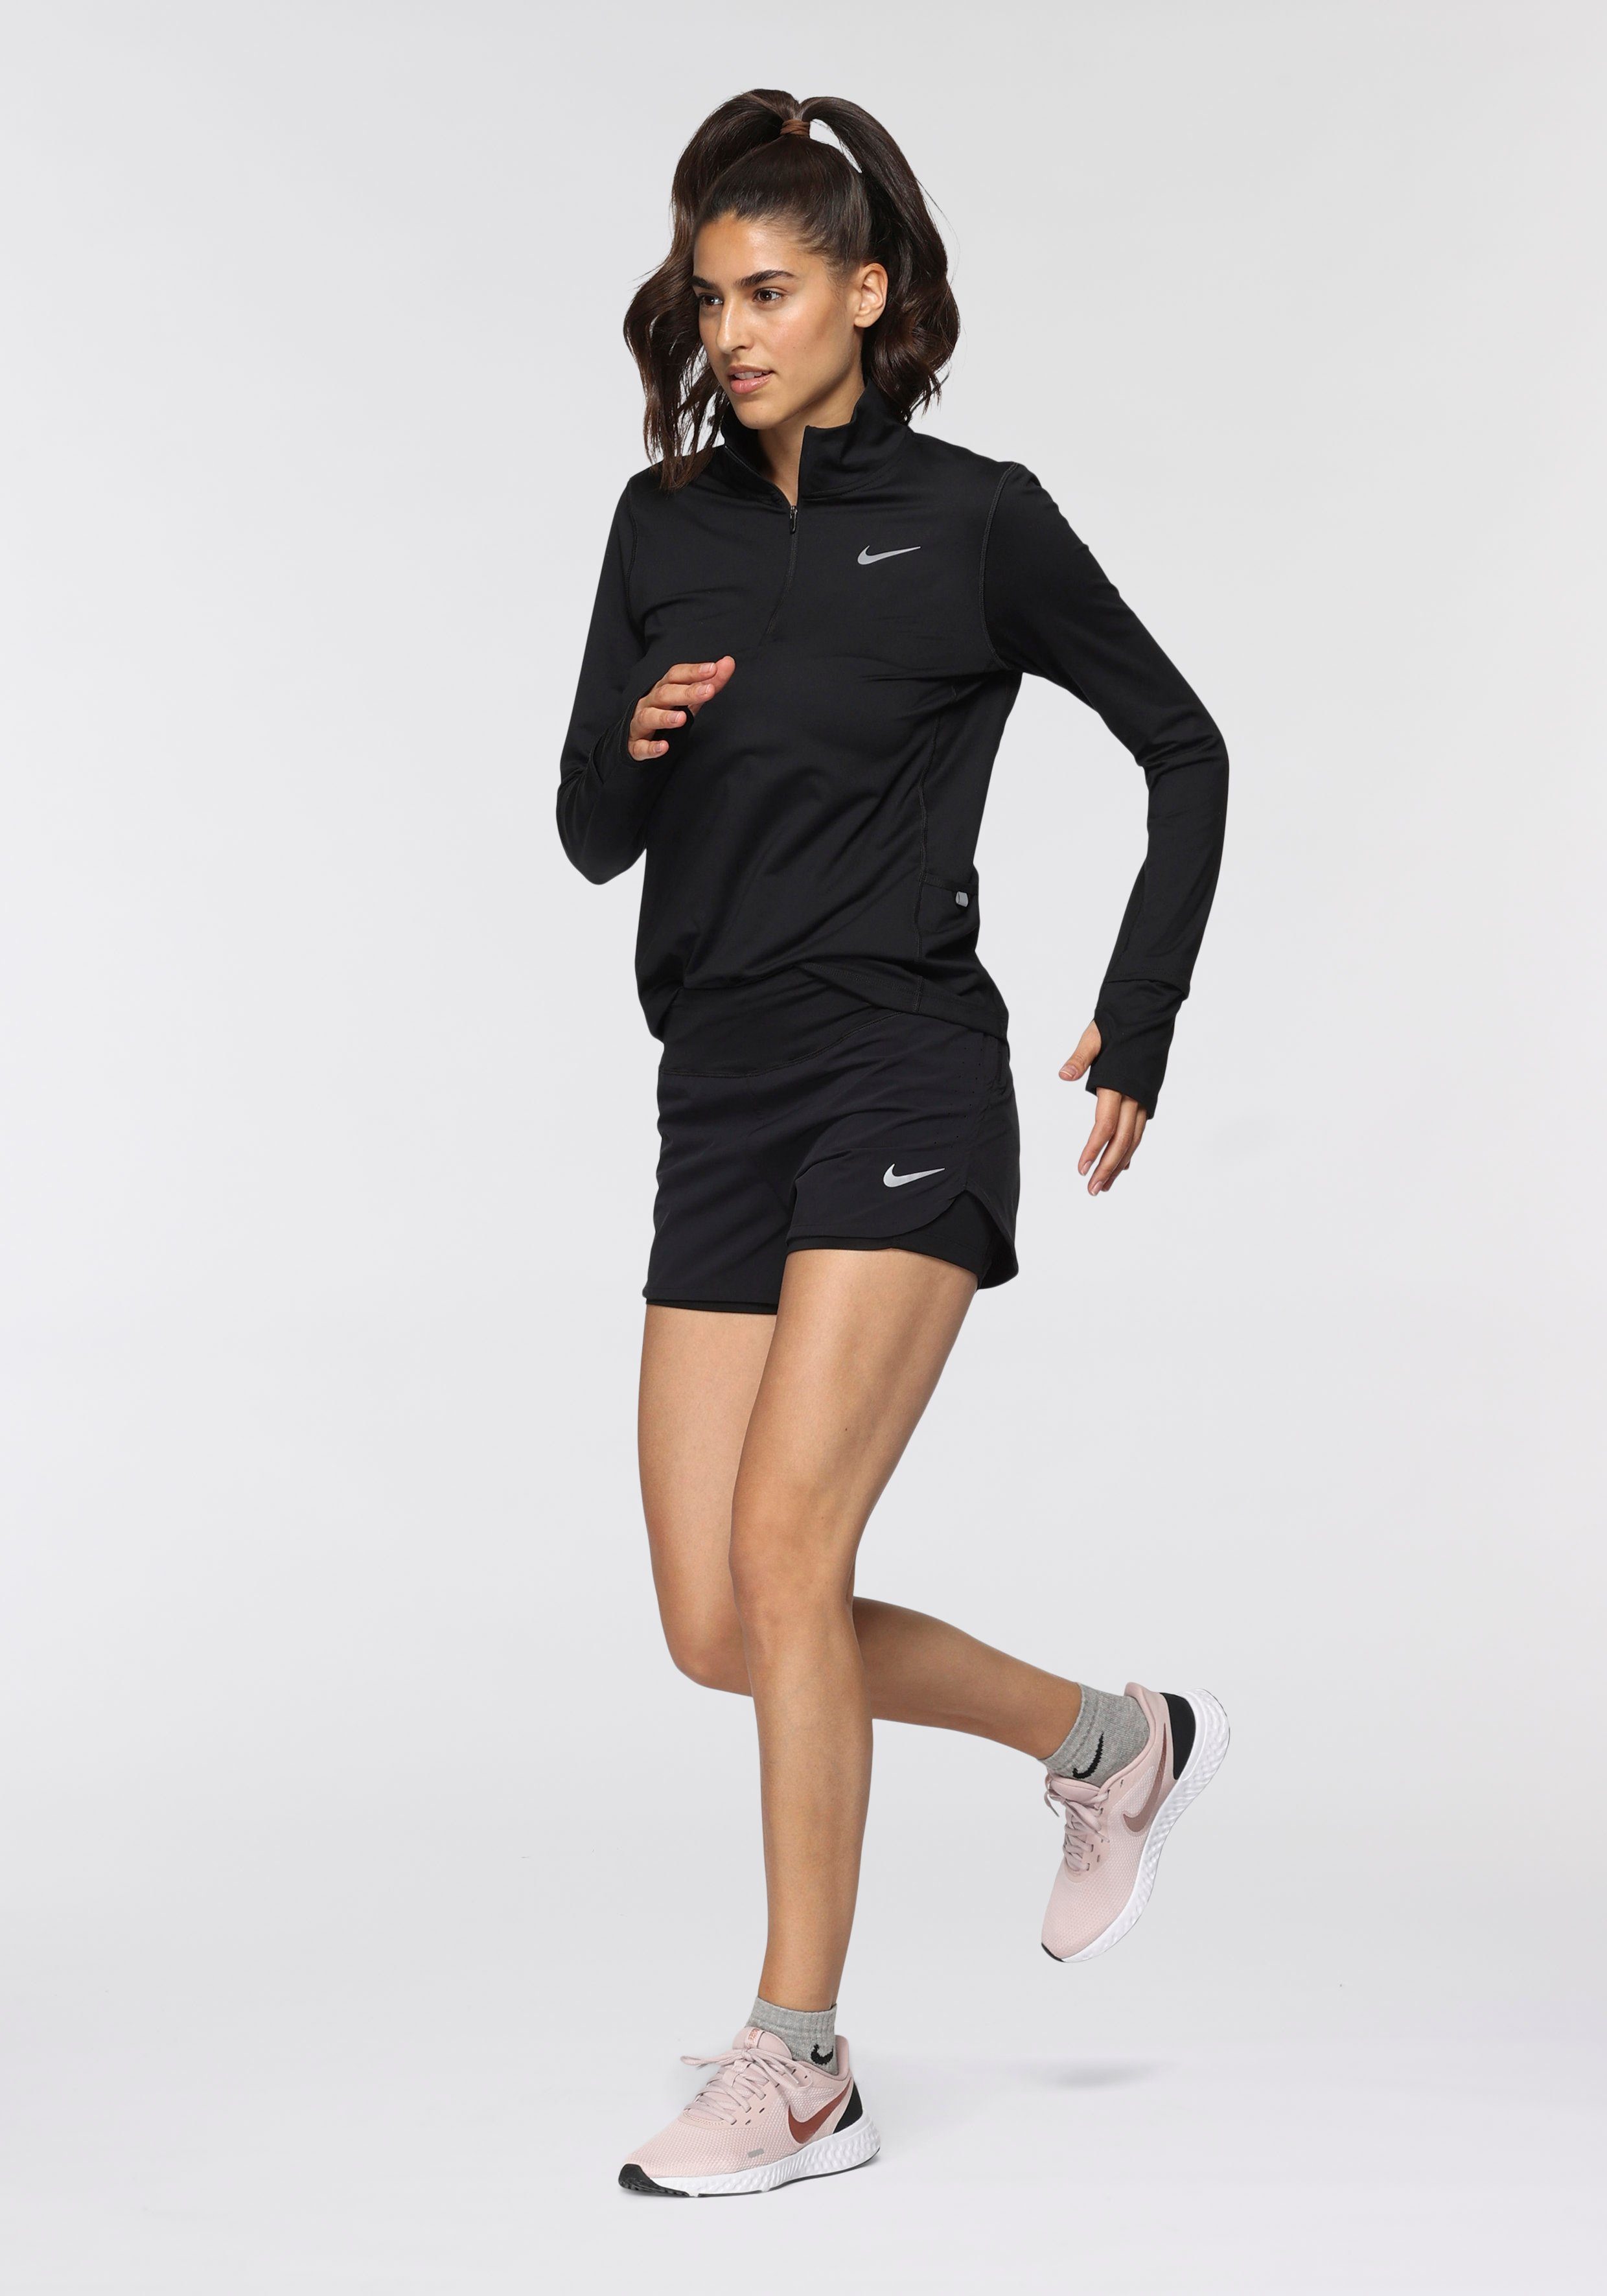 Shorts Laufshorts Eclipse Running Nike Women's Nike 2-in-1